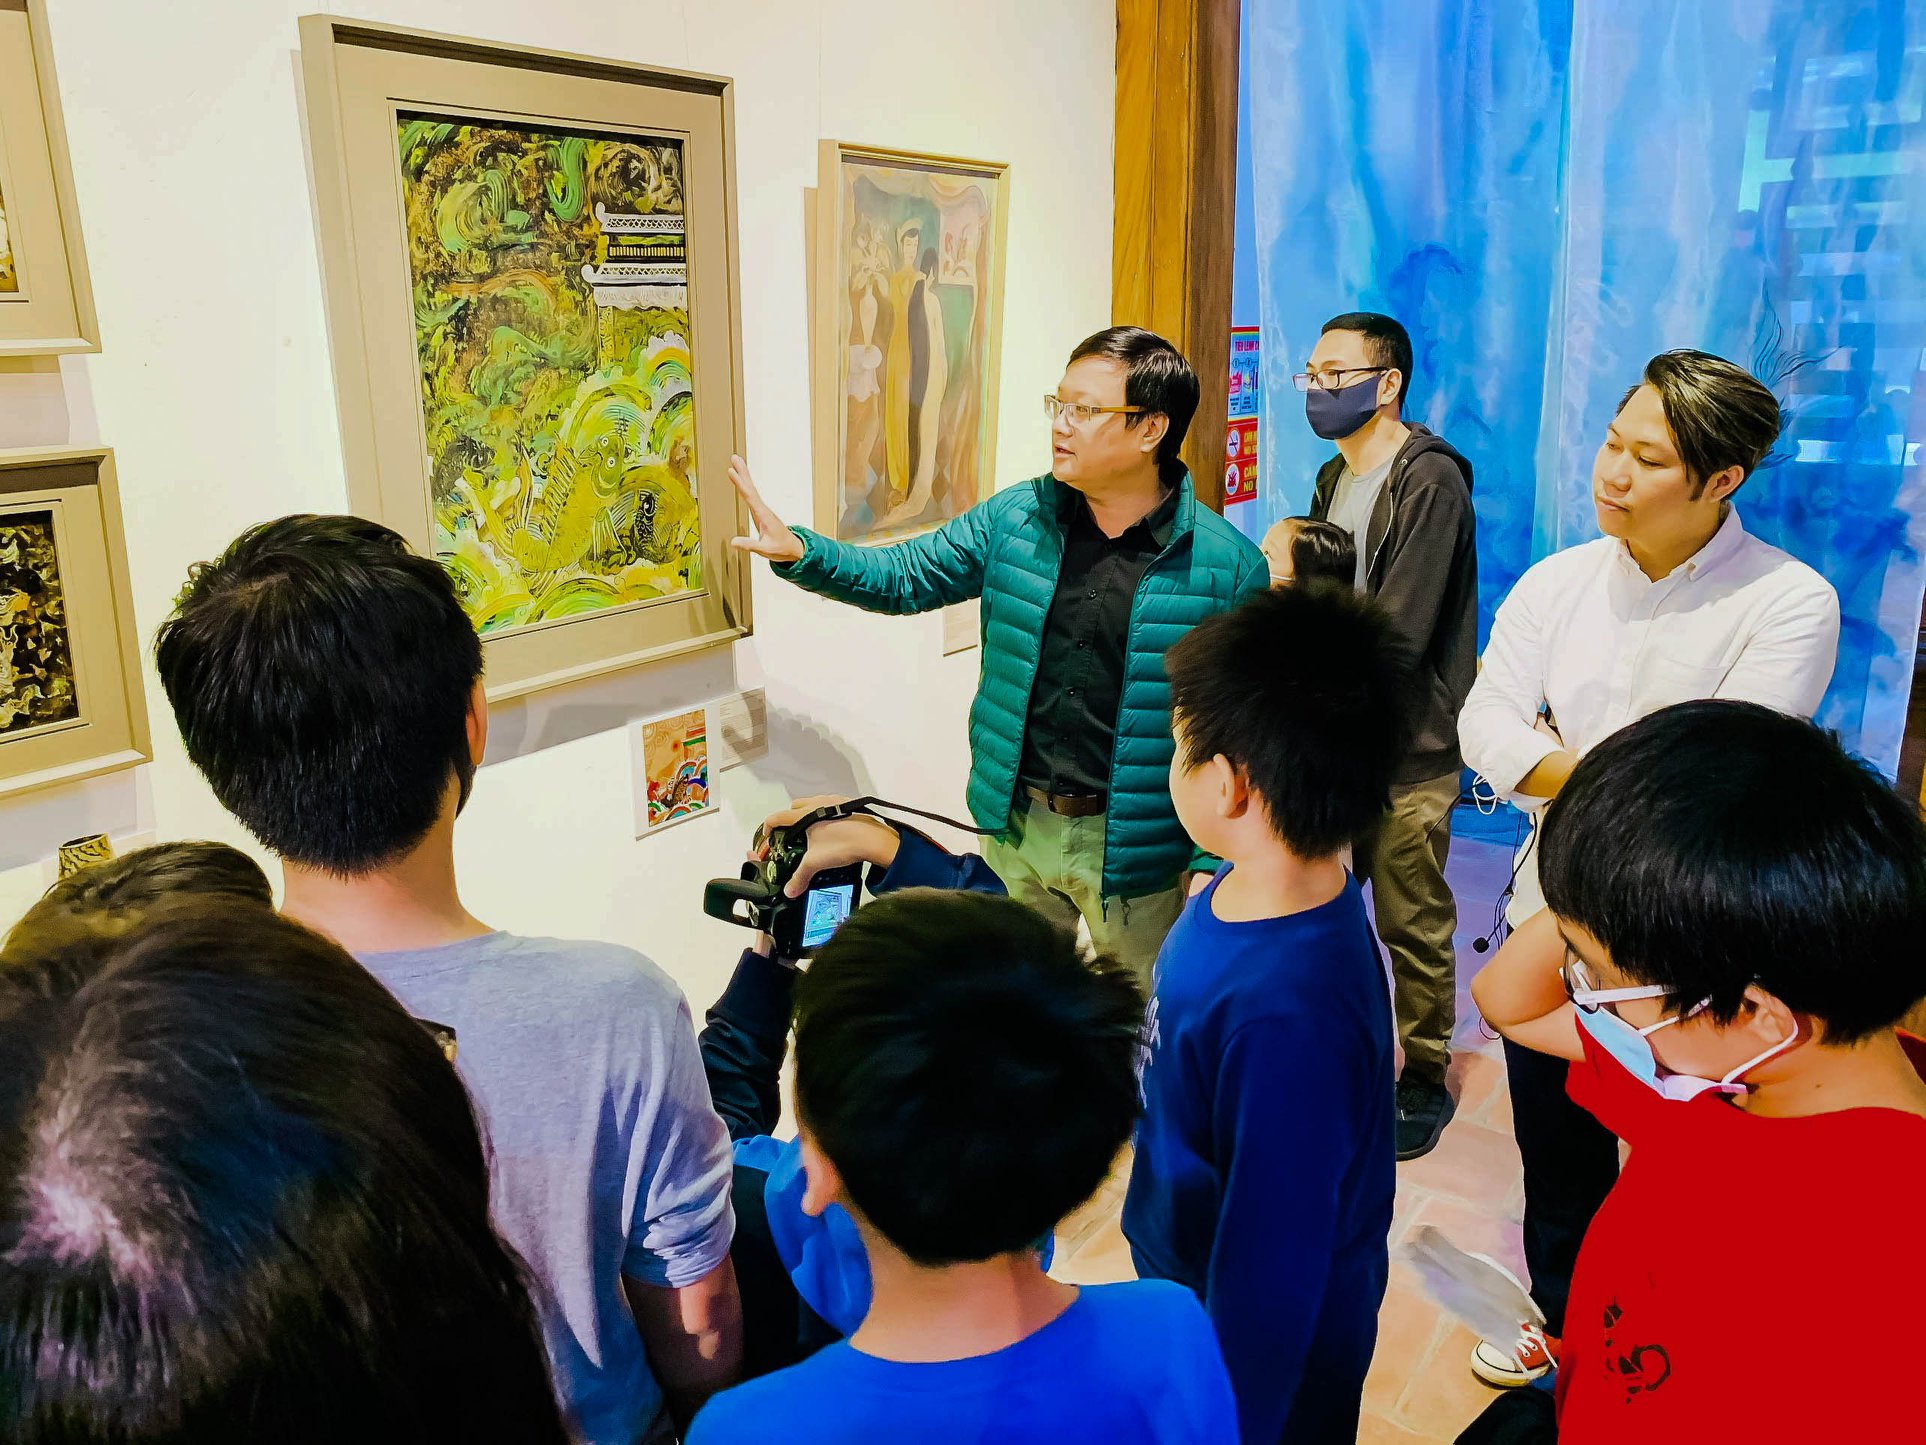 Chuyến đi đã giúp mọi người hiểu hơn về một trong những dòng tranh truyền thống của nền hội họa Việt Nam, xen lẫn sự tự hào và không khỏi "xuýt xoa" khi thấy tranh...quá đẹp!